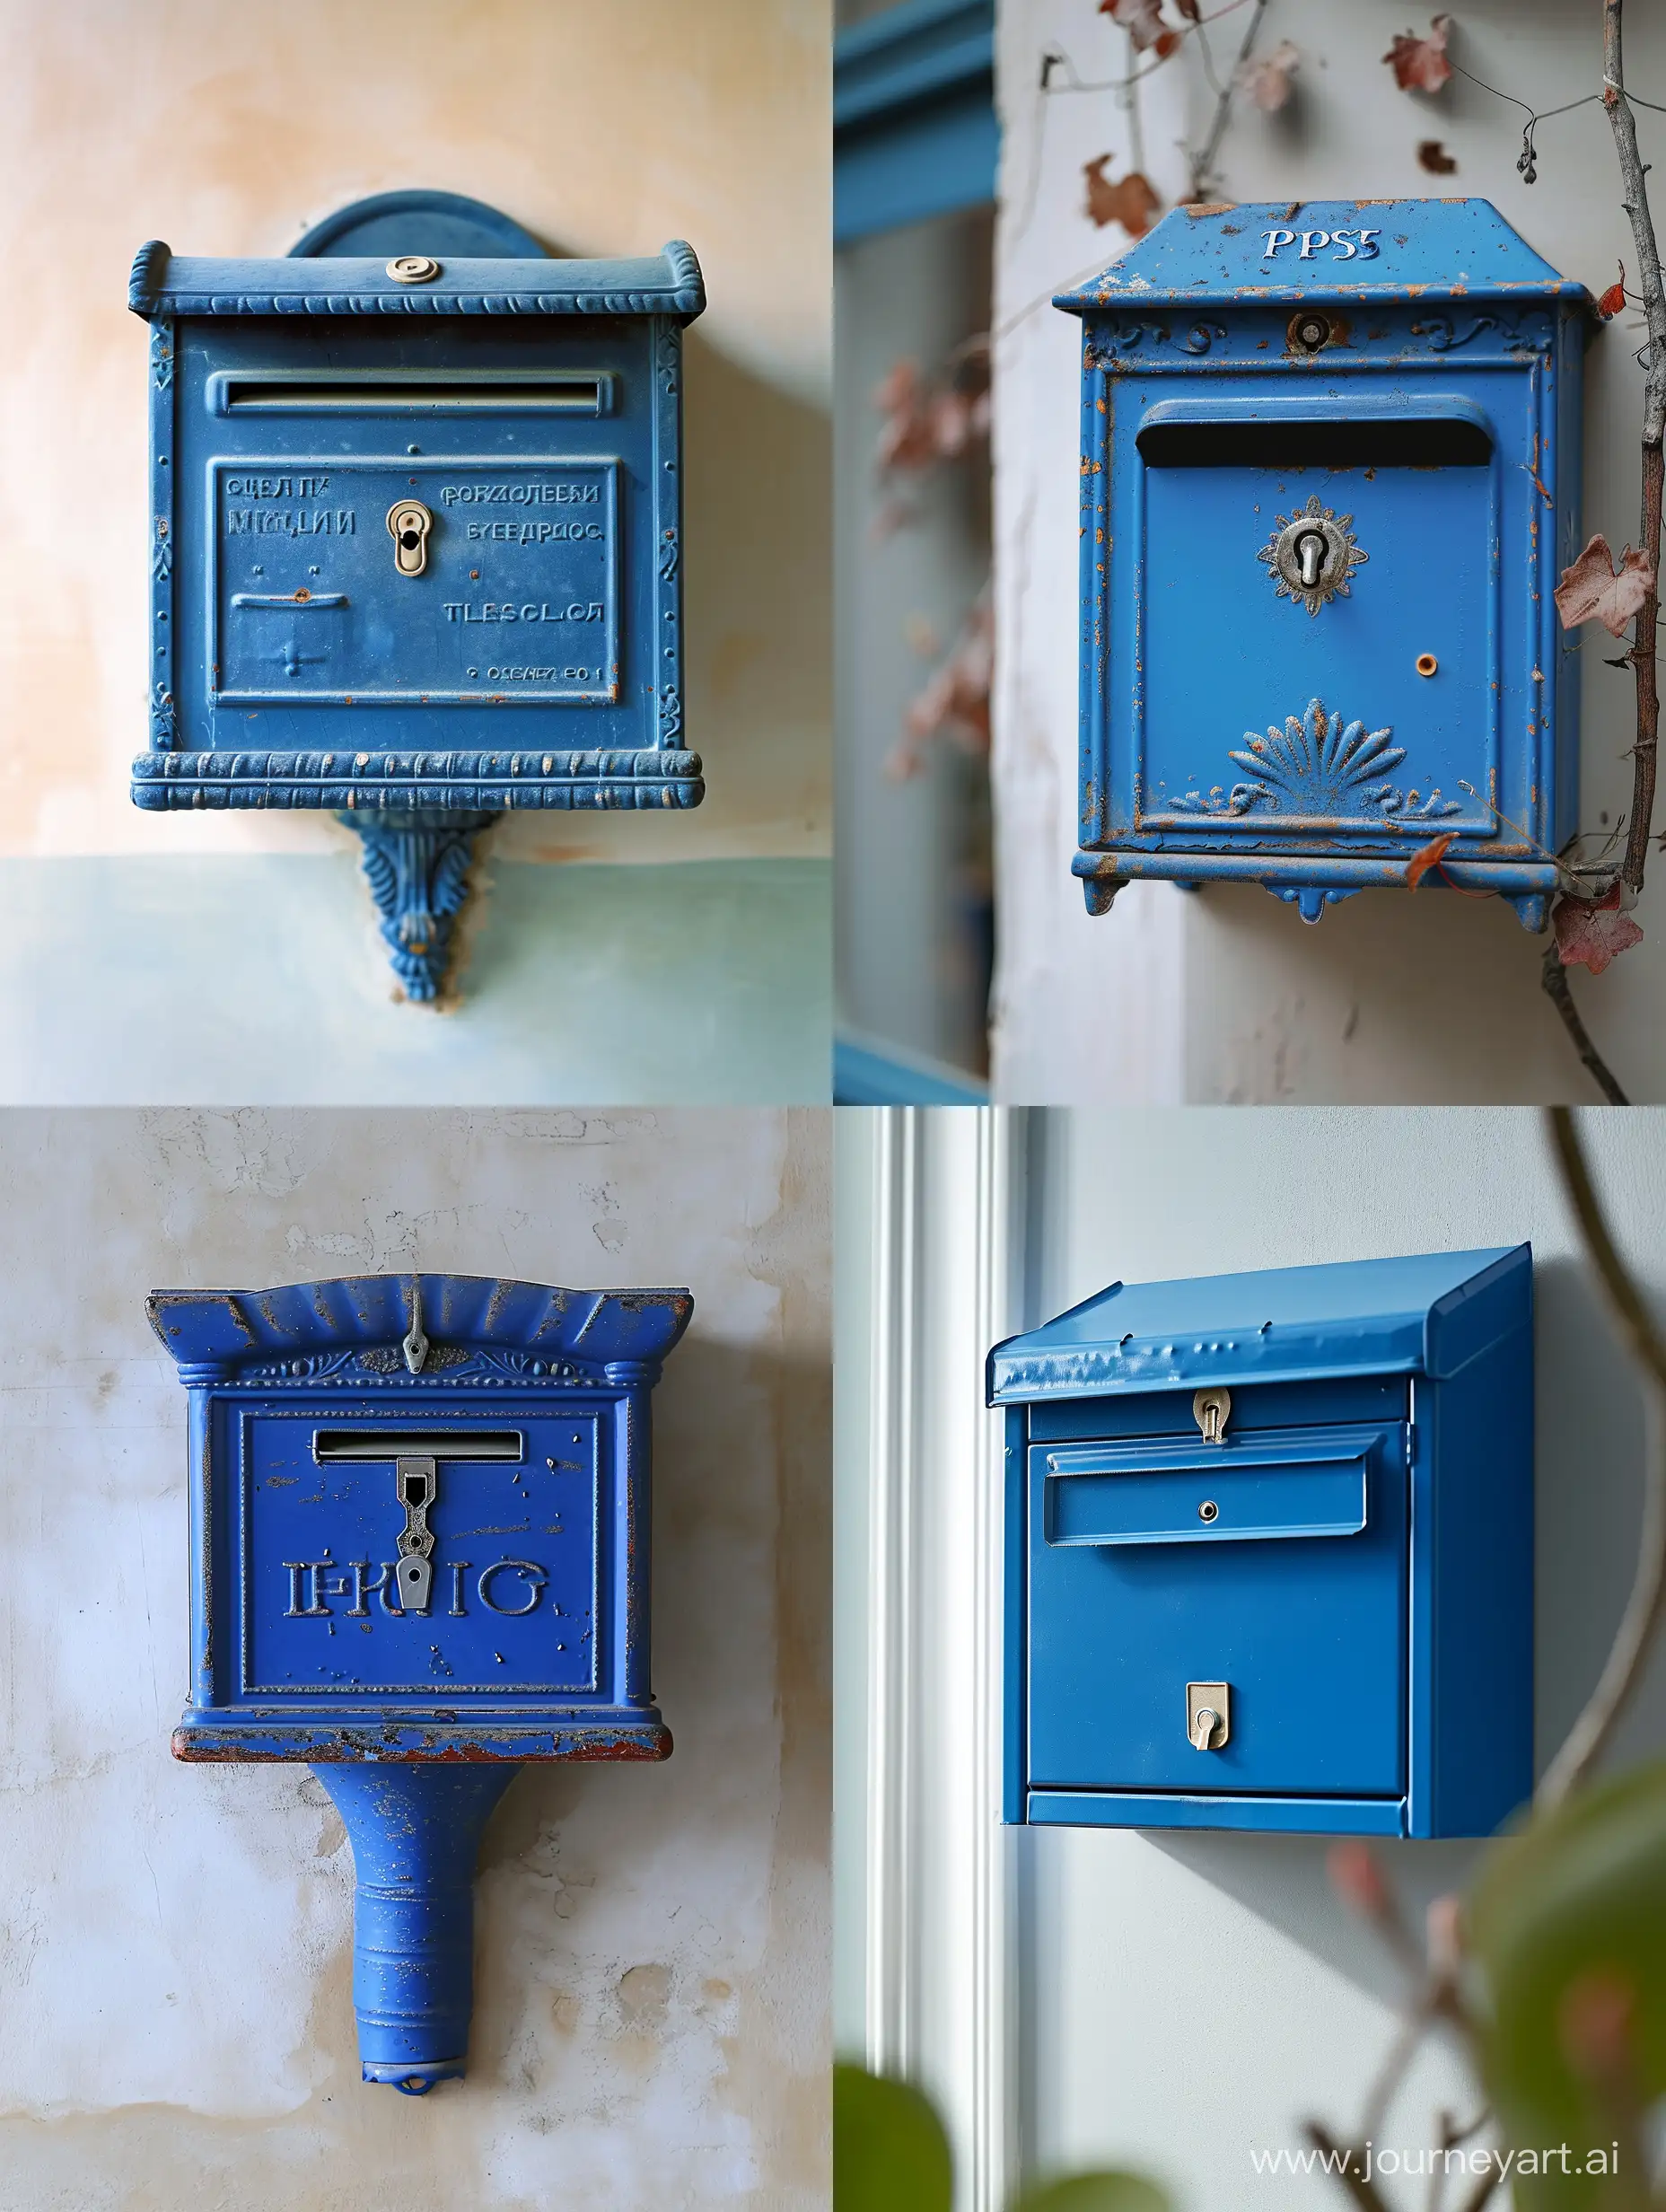 российский почтовый ящик почты России, синего цвета, висит на стене, крупный план, светлый задний фон